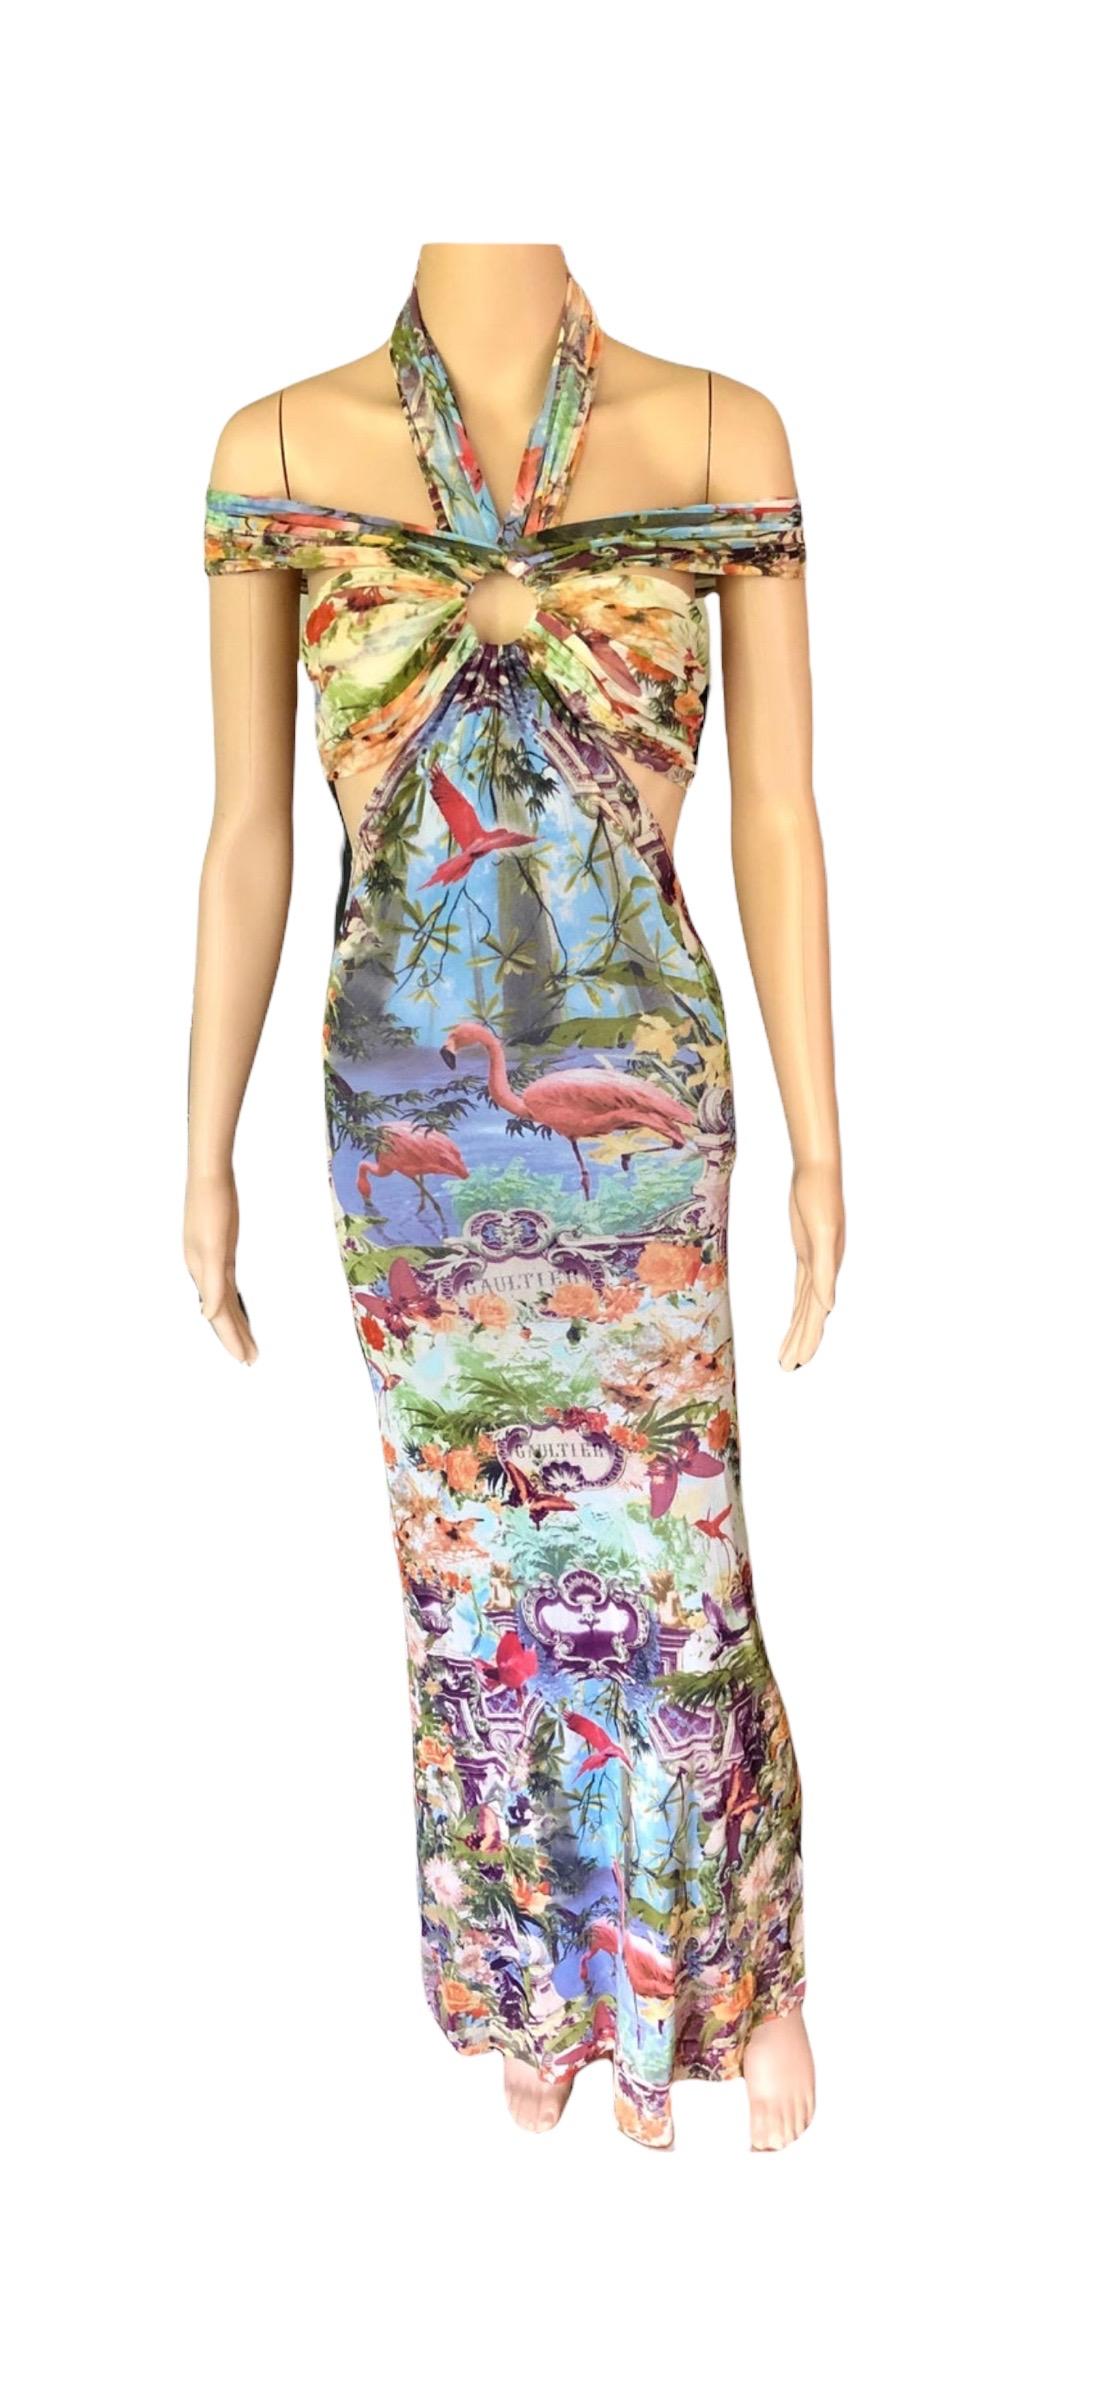 Jean Paul Gaultier Soleil S/S1999 Flamingo Tropical Print Cutout Mesh Maxi Dress For Sale 10